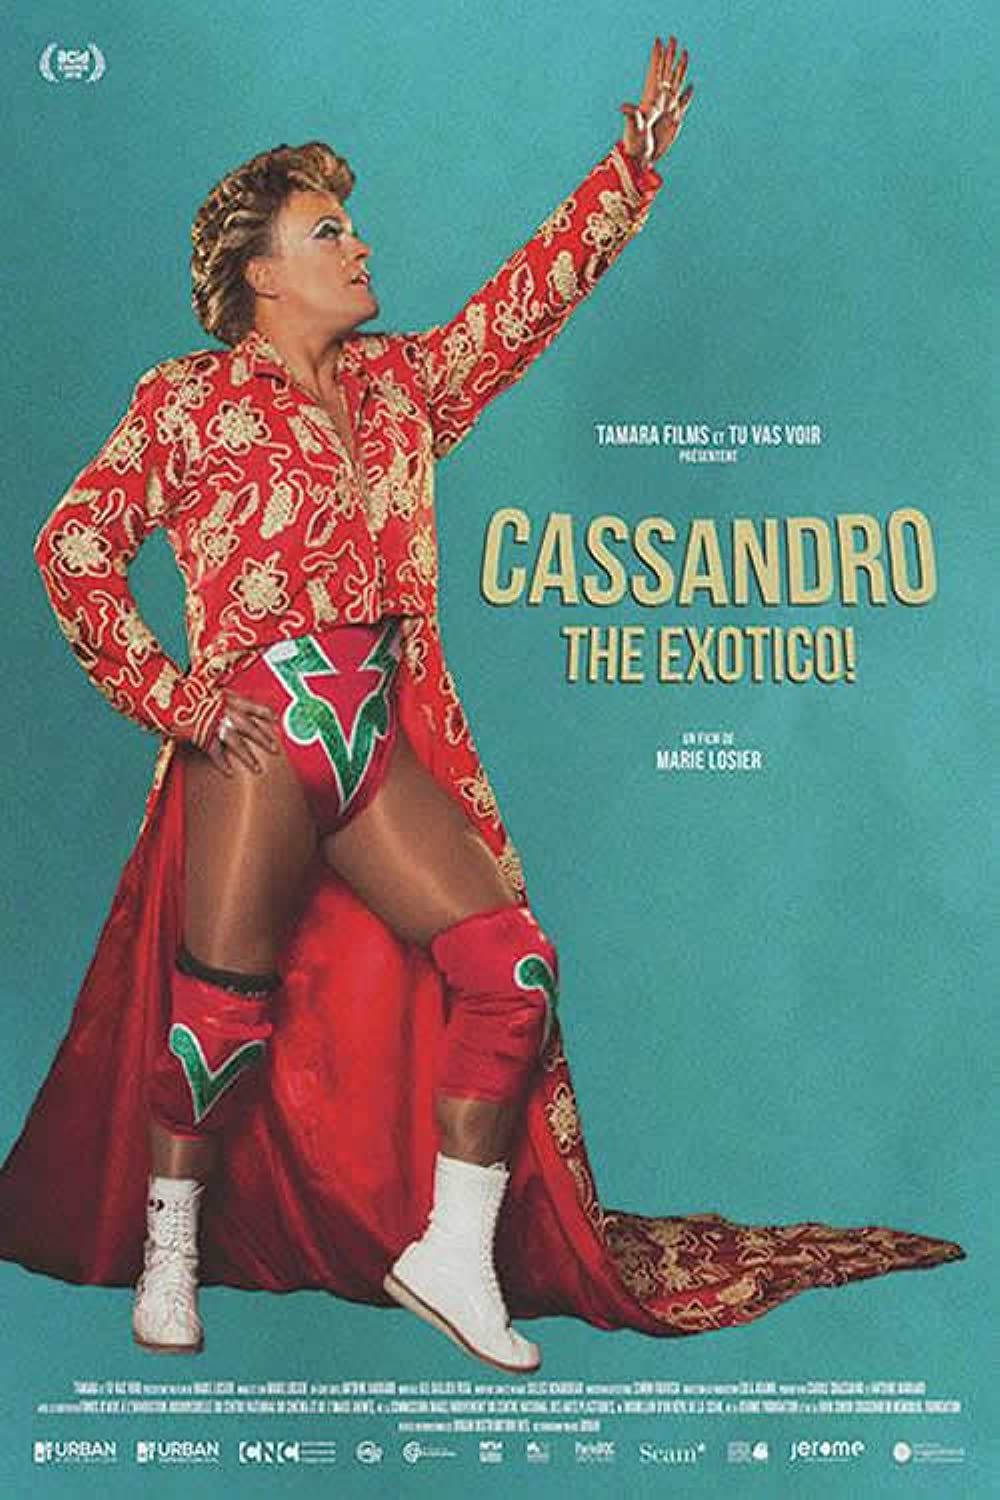 Filmbeschreibung zu Cassandro the Exotico! (OV)